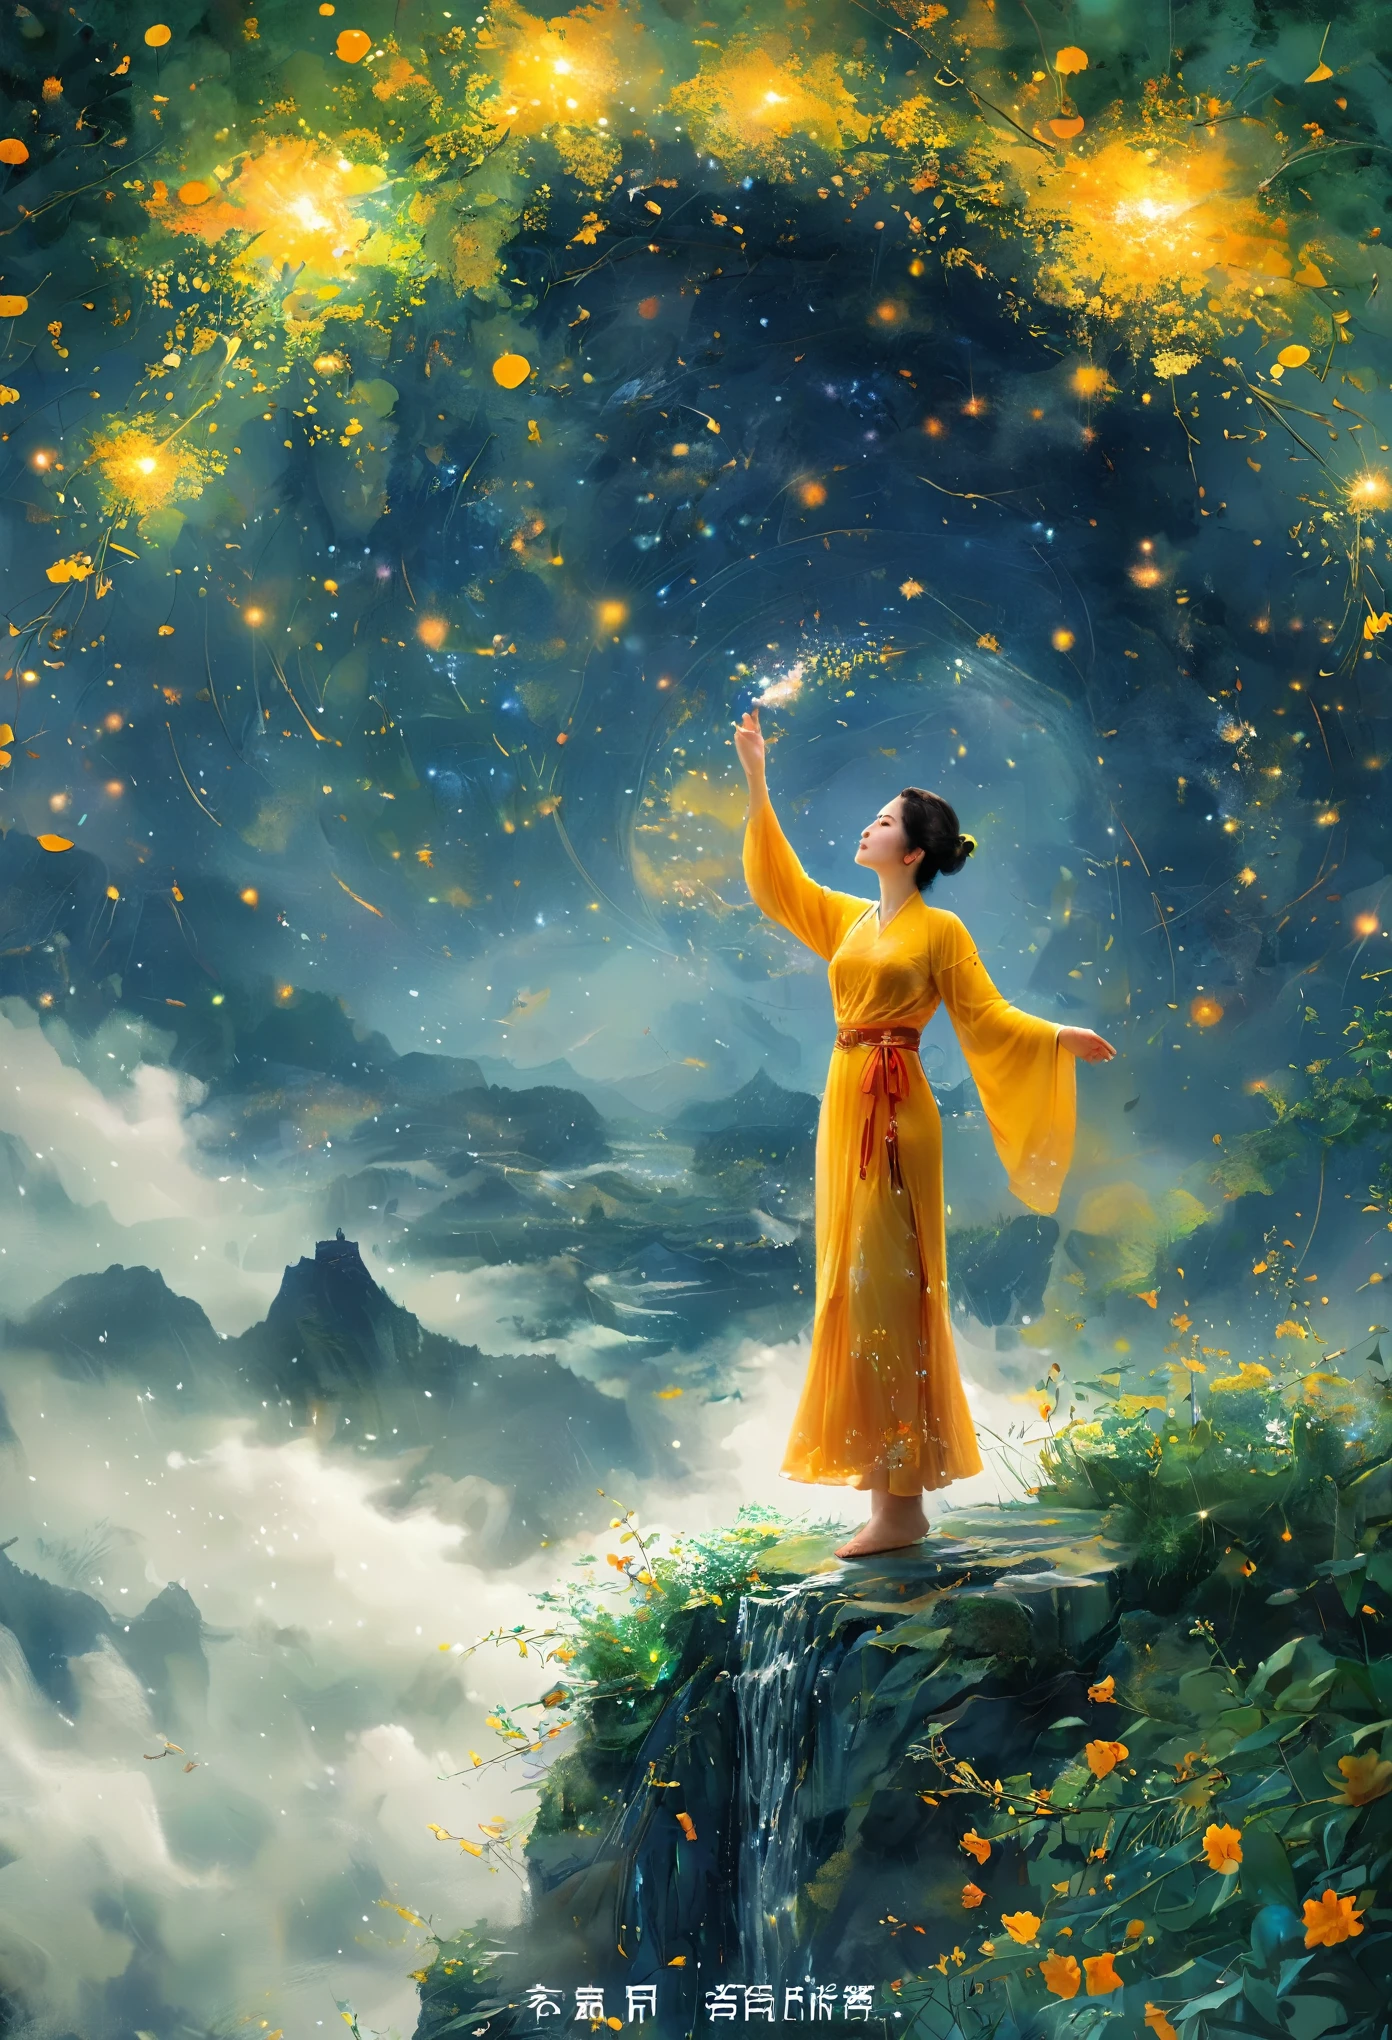 أسلوب التوضيح لـ Cai GuoRUN, 1فتاة，امرأة ترتدي تنورة طويلة تقف على منحدر وتنظر إلى السماء المرصعة بالنجوم，إلهة الفضاء，آلهة درب التبانة，إلهة السماء，أثيري نجمي，حلم，ساحر سماوي جميل，لوحة خيالية جميلة，فن الخيال الجميل，الخيال أثيري，非常فن الخيال الجميل，الخيال الفني الرقمي，ساحر وعالم آخر，جمال الخيال，الفن الجميل لعرض Octane UHD 8k，الضوء الحجمي，الضوء الطبيعي الناعم，(حساسة للغاية:1.2，فقدان التركيز:1.2，زاهى الألوان，إضاءة الفيلم，chiaroscuro，تتبع الأشعة)，تحفة，غنية للغاية，مفصلة للغاية，8 كيلو, 1cgrssh1